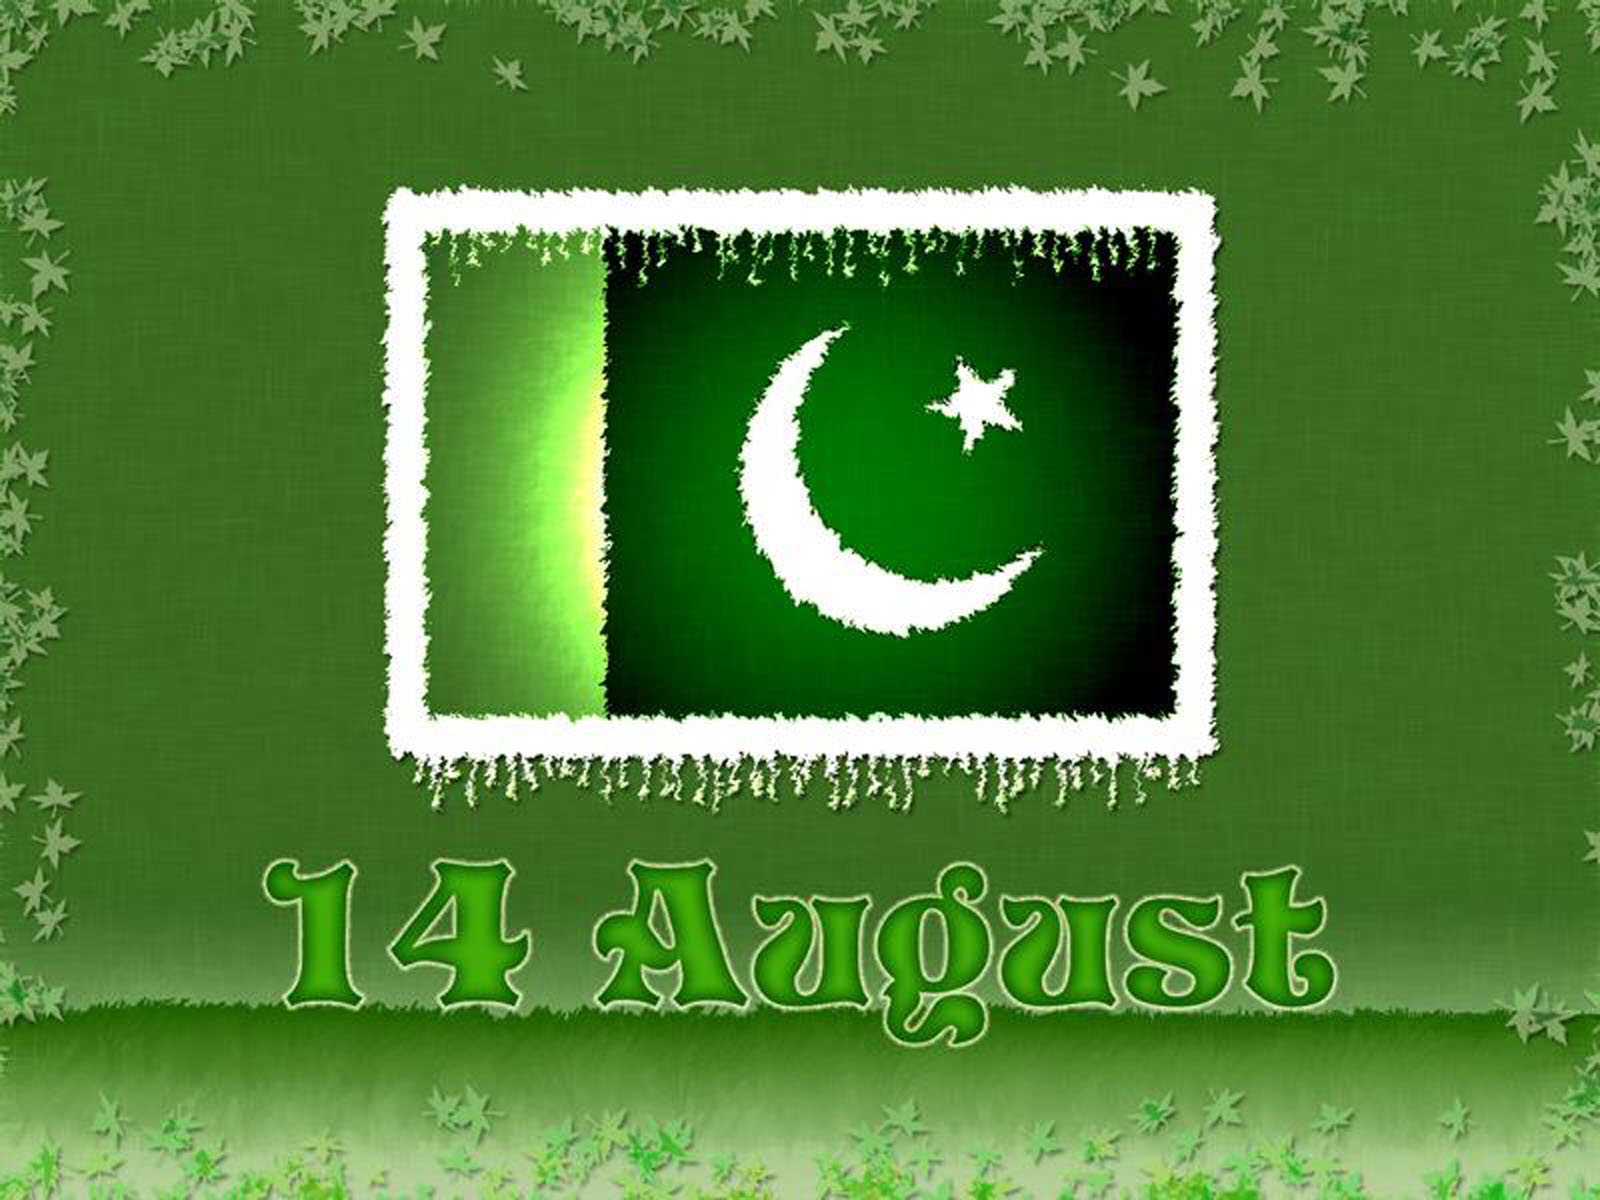 Pakistan 14 August 2017 - HD Wallpaper 